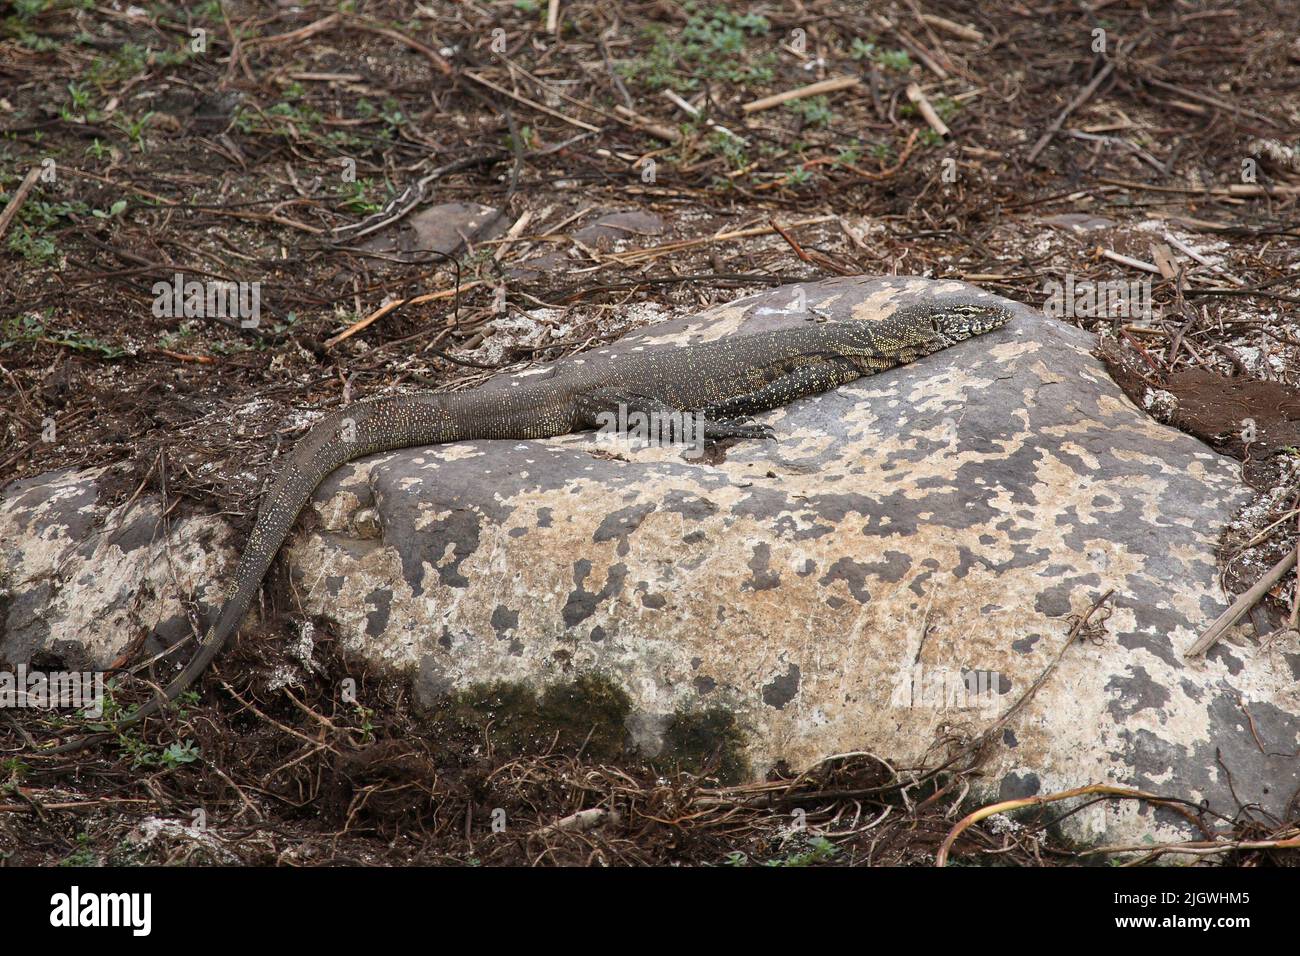 Nilwaran / Nile Monitor / Varanus niloticus Stock Photo